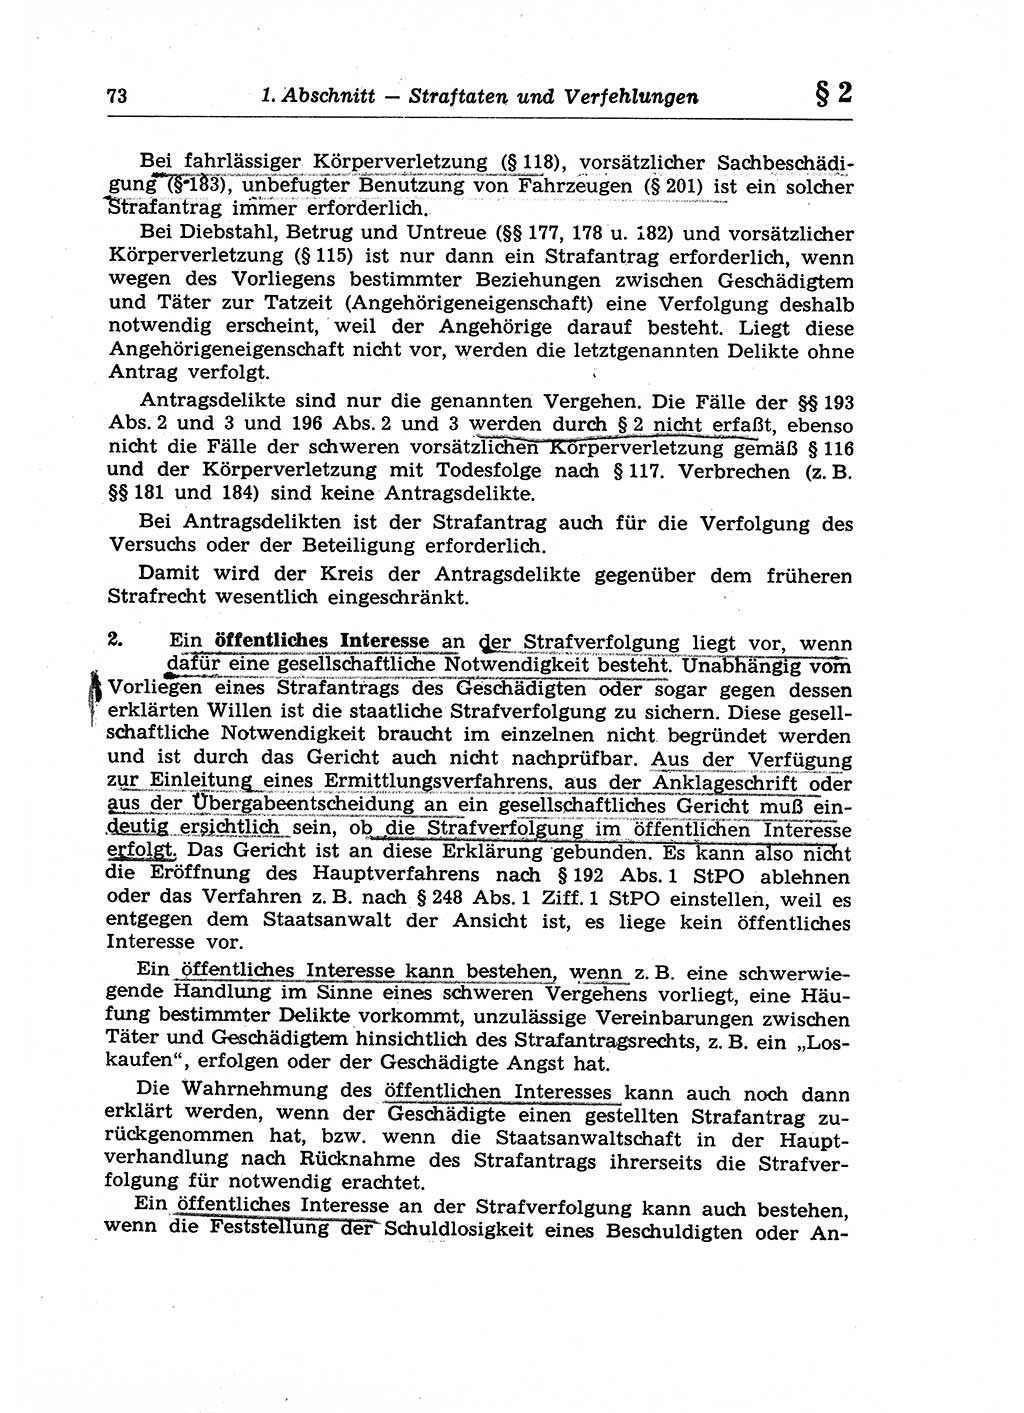 Strafrecht der Deutschen Demokratischen Republik (DDR), Lehrkommentar zum Strafgesetzbuch (StGB), Allgemeiner Teil 1970, Seite 73 (Strafr. DDR Lehrkomm. StGB AT 1970, S. 73)